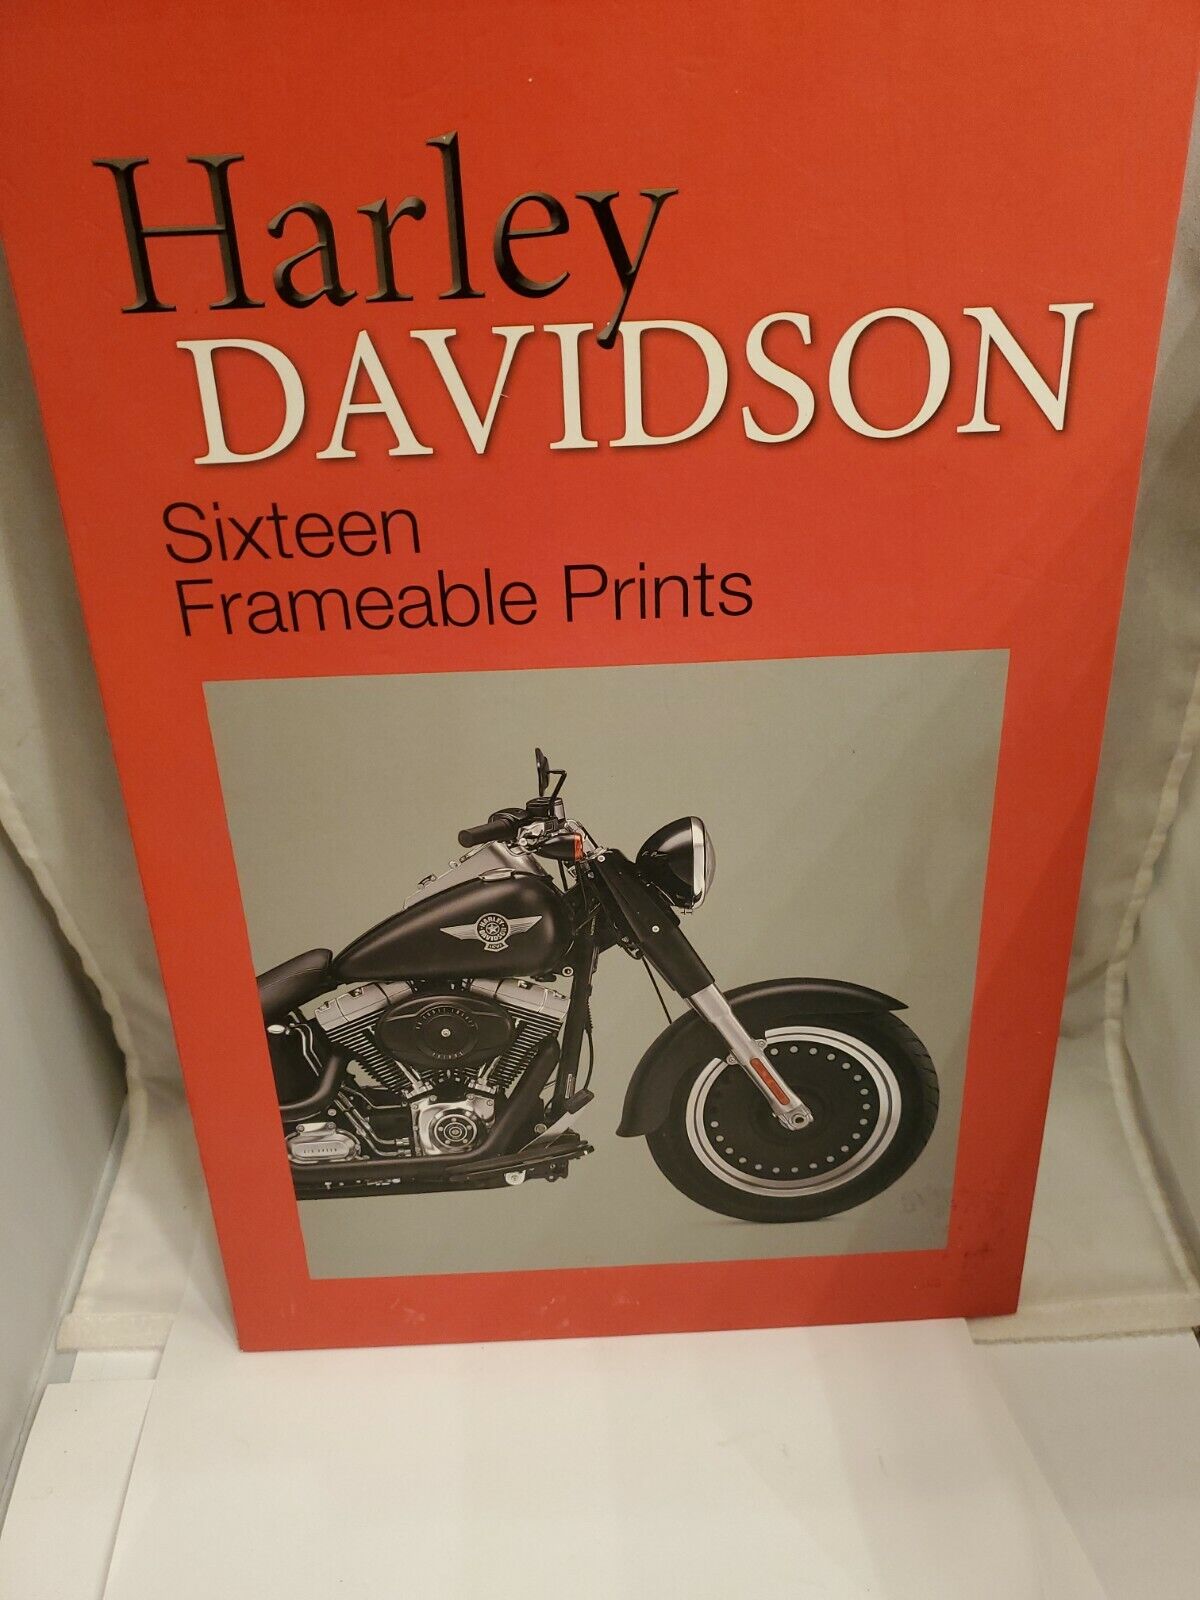 Harley Davidson Frameable Prints 16 Metro Books ISBN 978-1-4351-4847-5